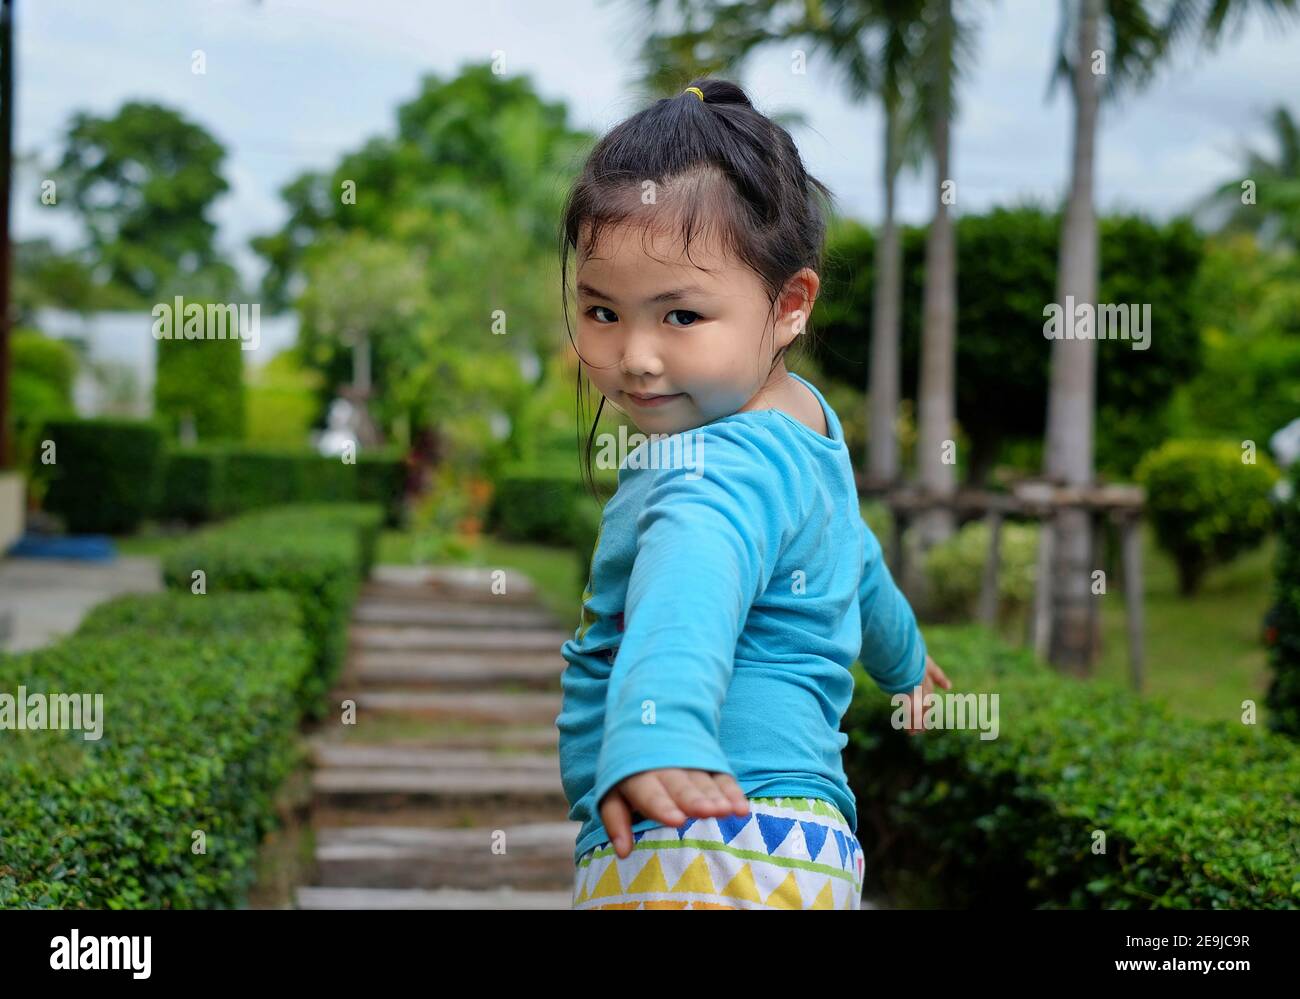 Una linda joven asiática con una camisa azul brillante está paseando en un parque con una pasarela de piedra, dando vuelta a una posando para la cámara después de ser Foto de stock